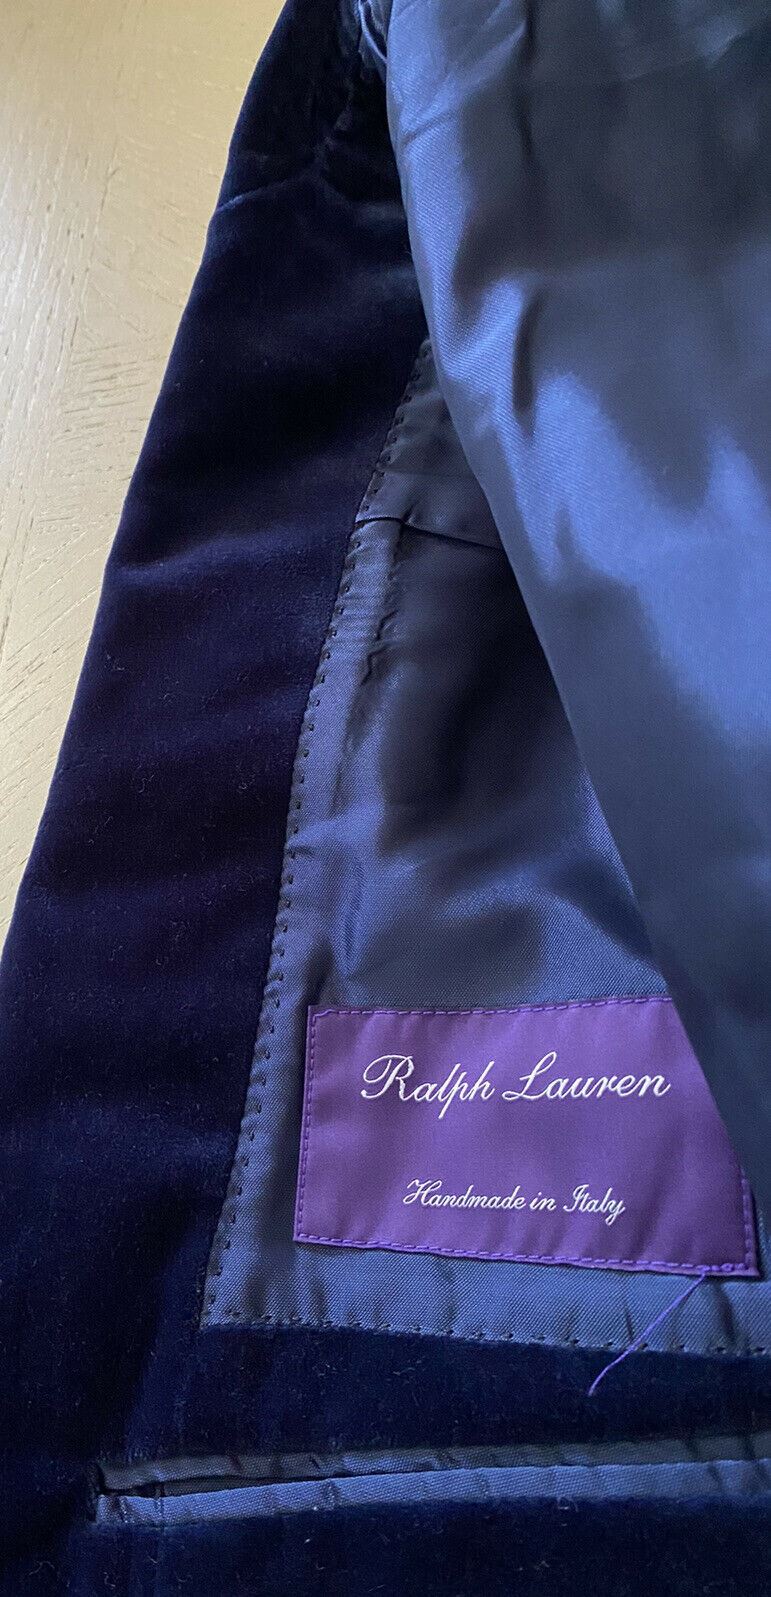 NWT $2495 Ralph Lauren Purple Label Мужской спортивный пиджак Синий 36S США/46S EU Ita